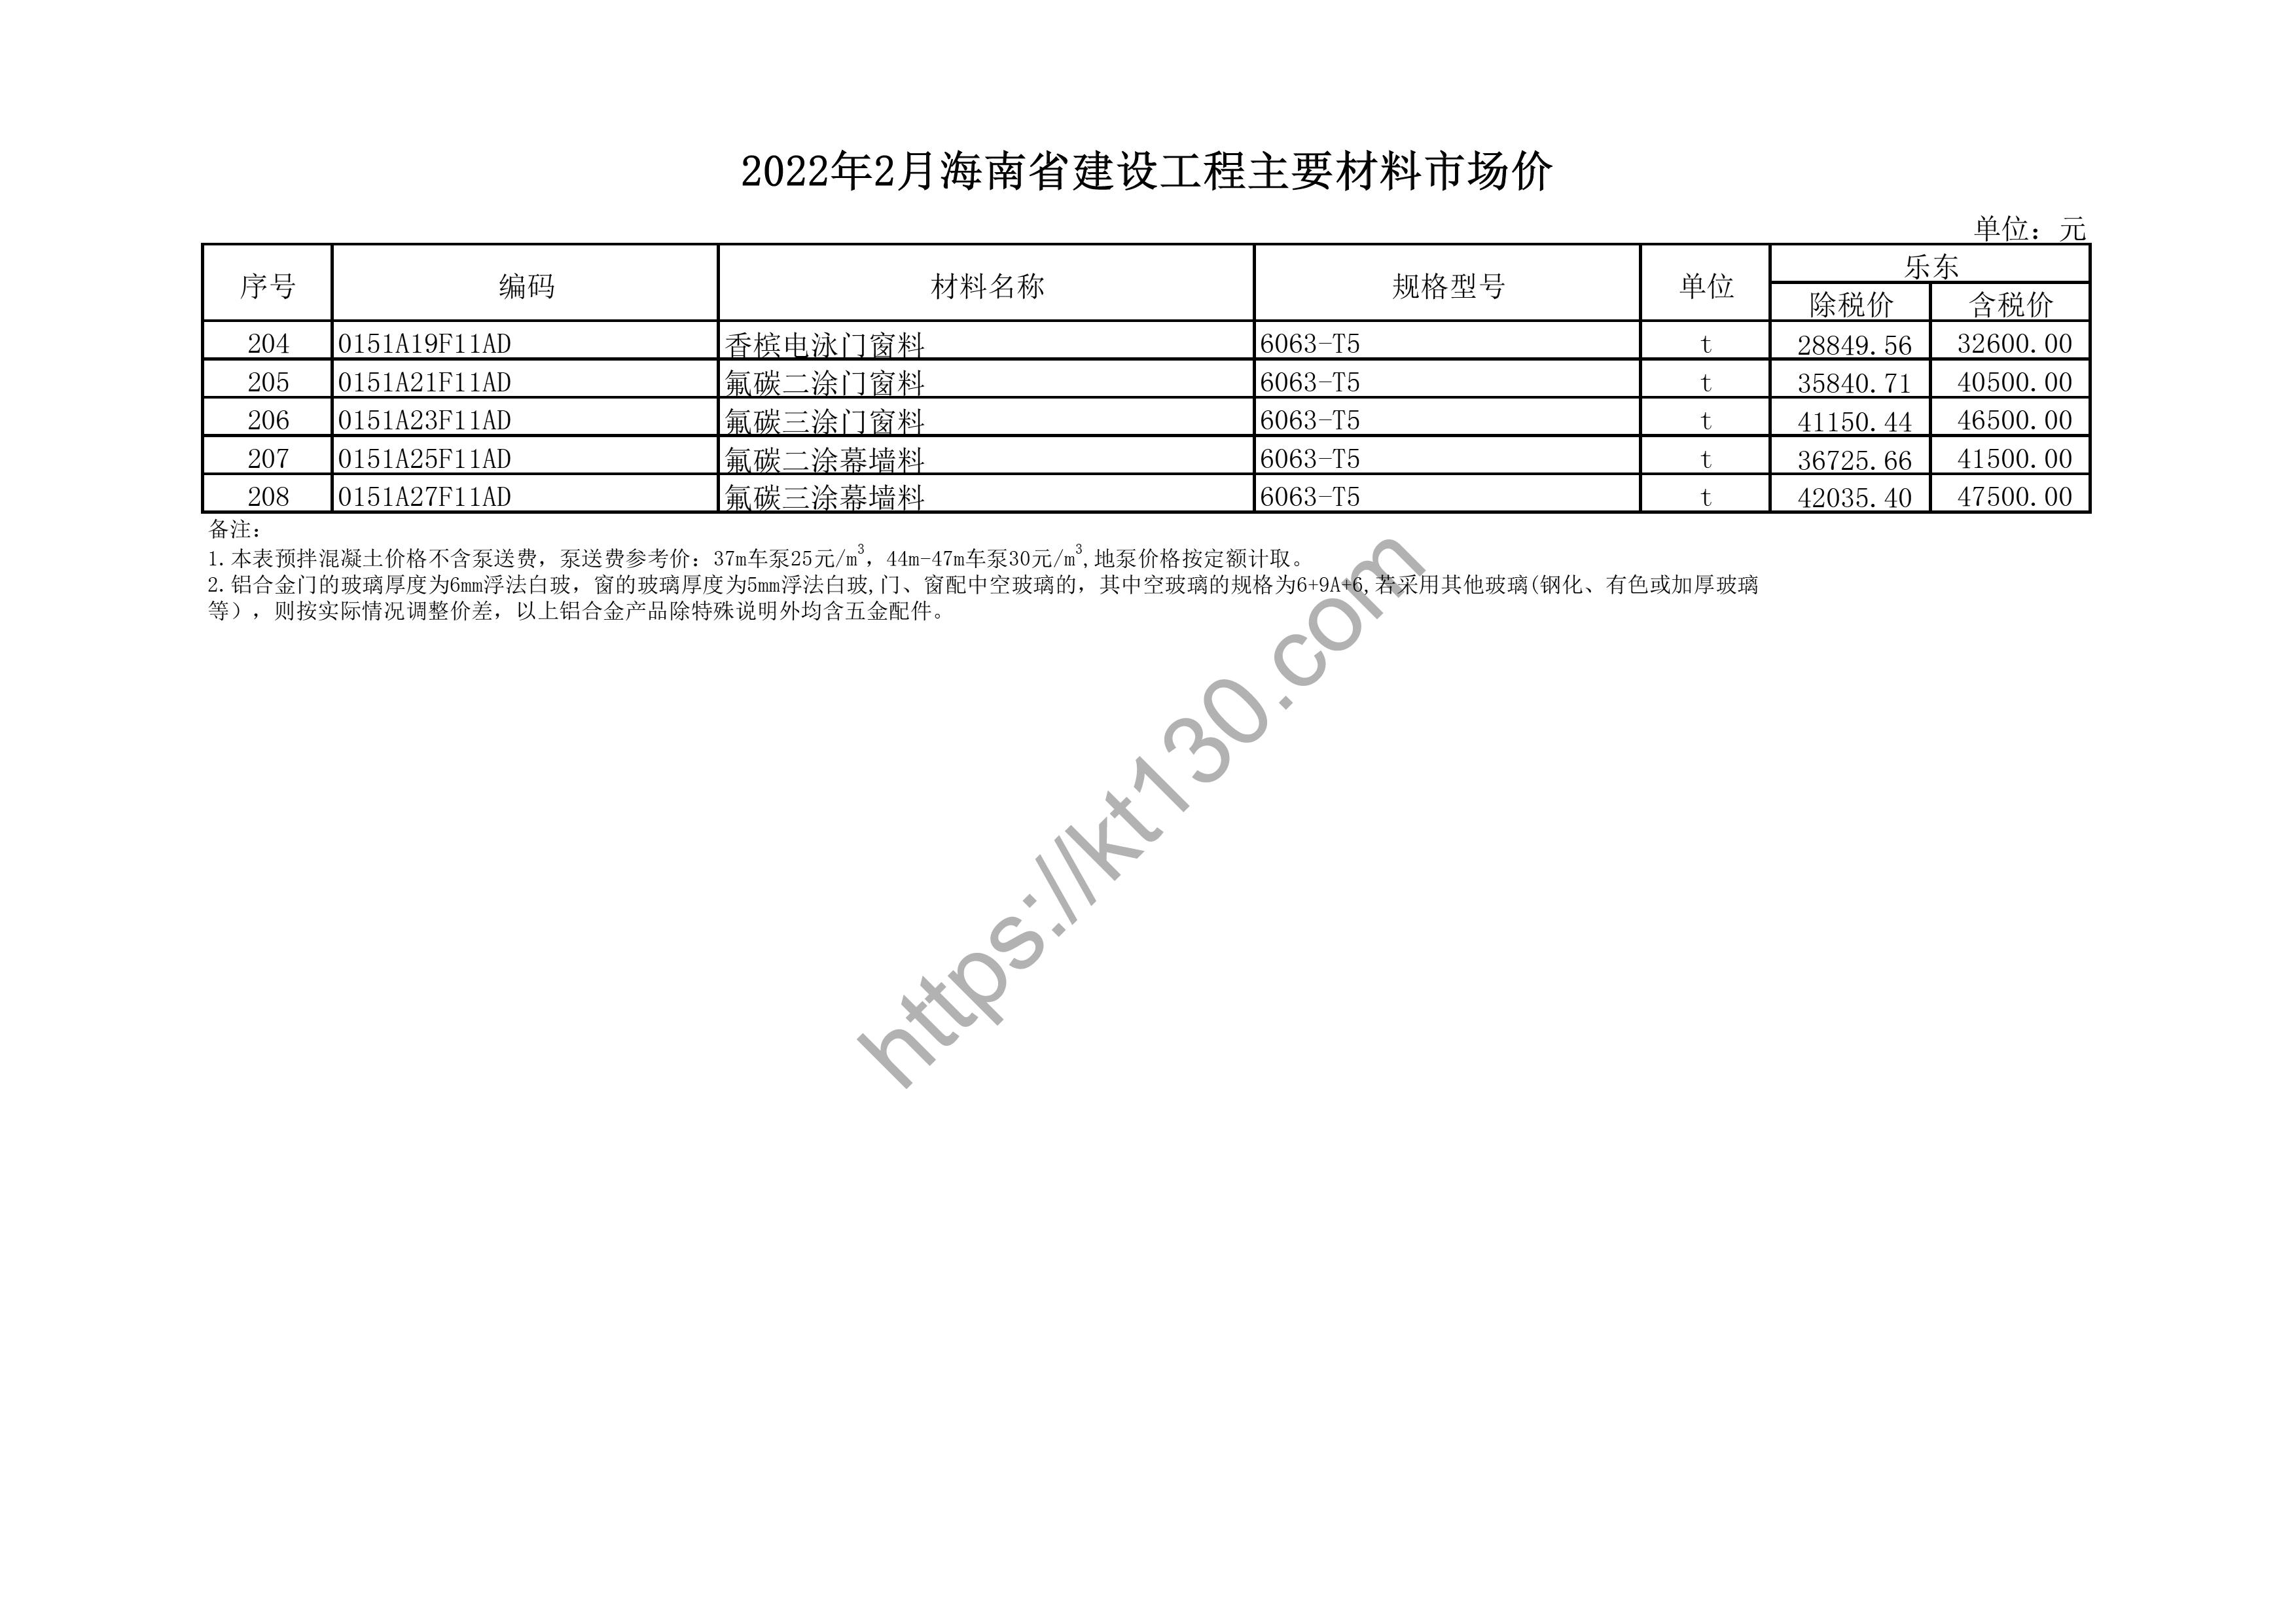 海南省2022年2月建筑材料价_混凝土砌块_43868